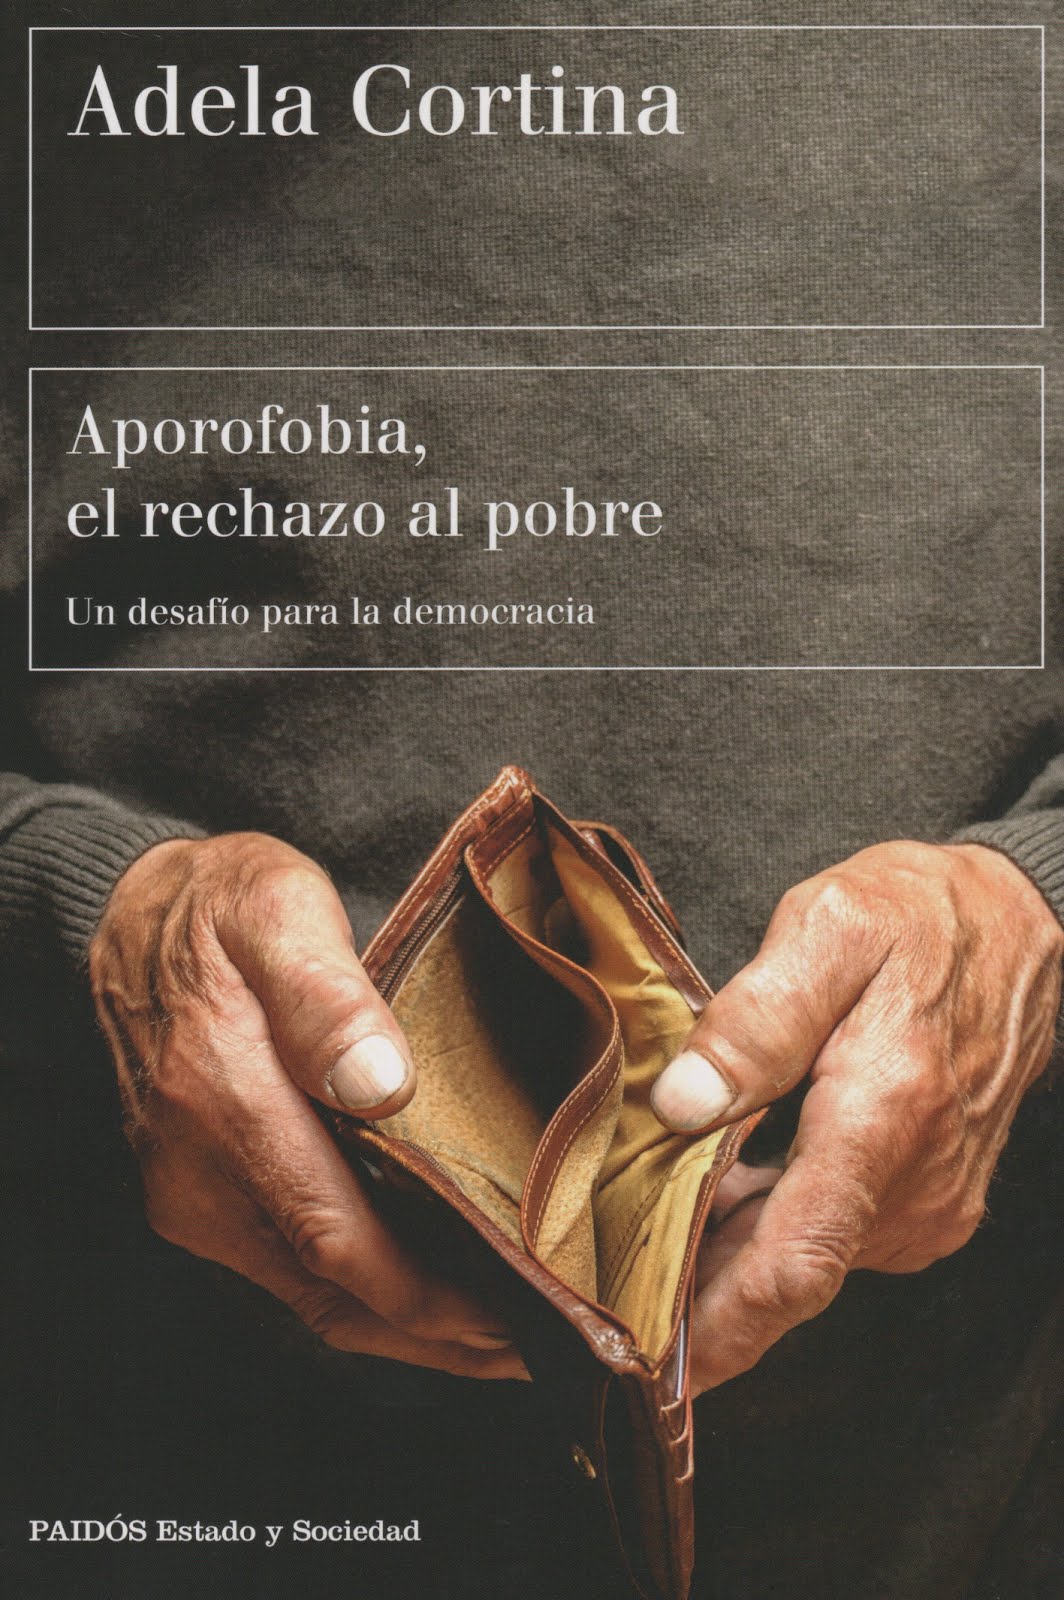 Adela Cortina (Aporofobia, el rechazo al pobre) Un desafío para la democracia